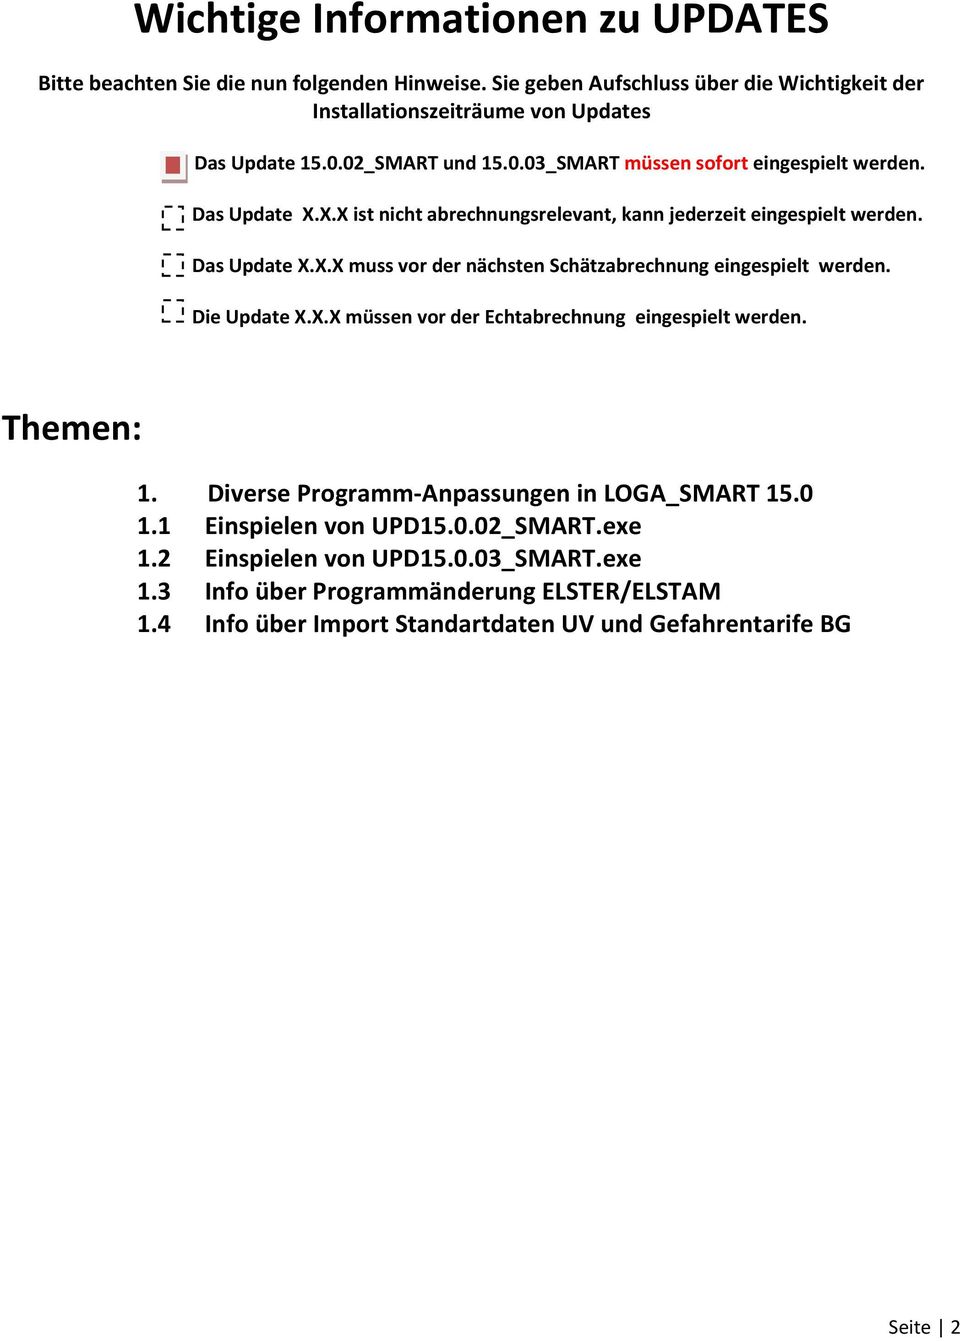 Die Update X.X.X müssen vor der Echtabrechnung eingespielt werden. Themen: 1. Diverse Programm-Anpassungen in LOGA_SMART 15.0 1.1 Einspielen von UPD15.0.02_SMART.exe 1.